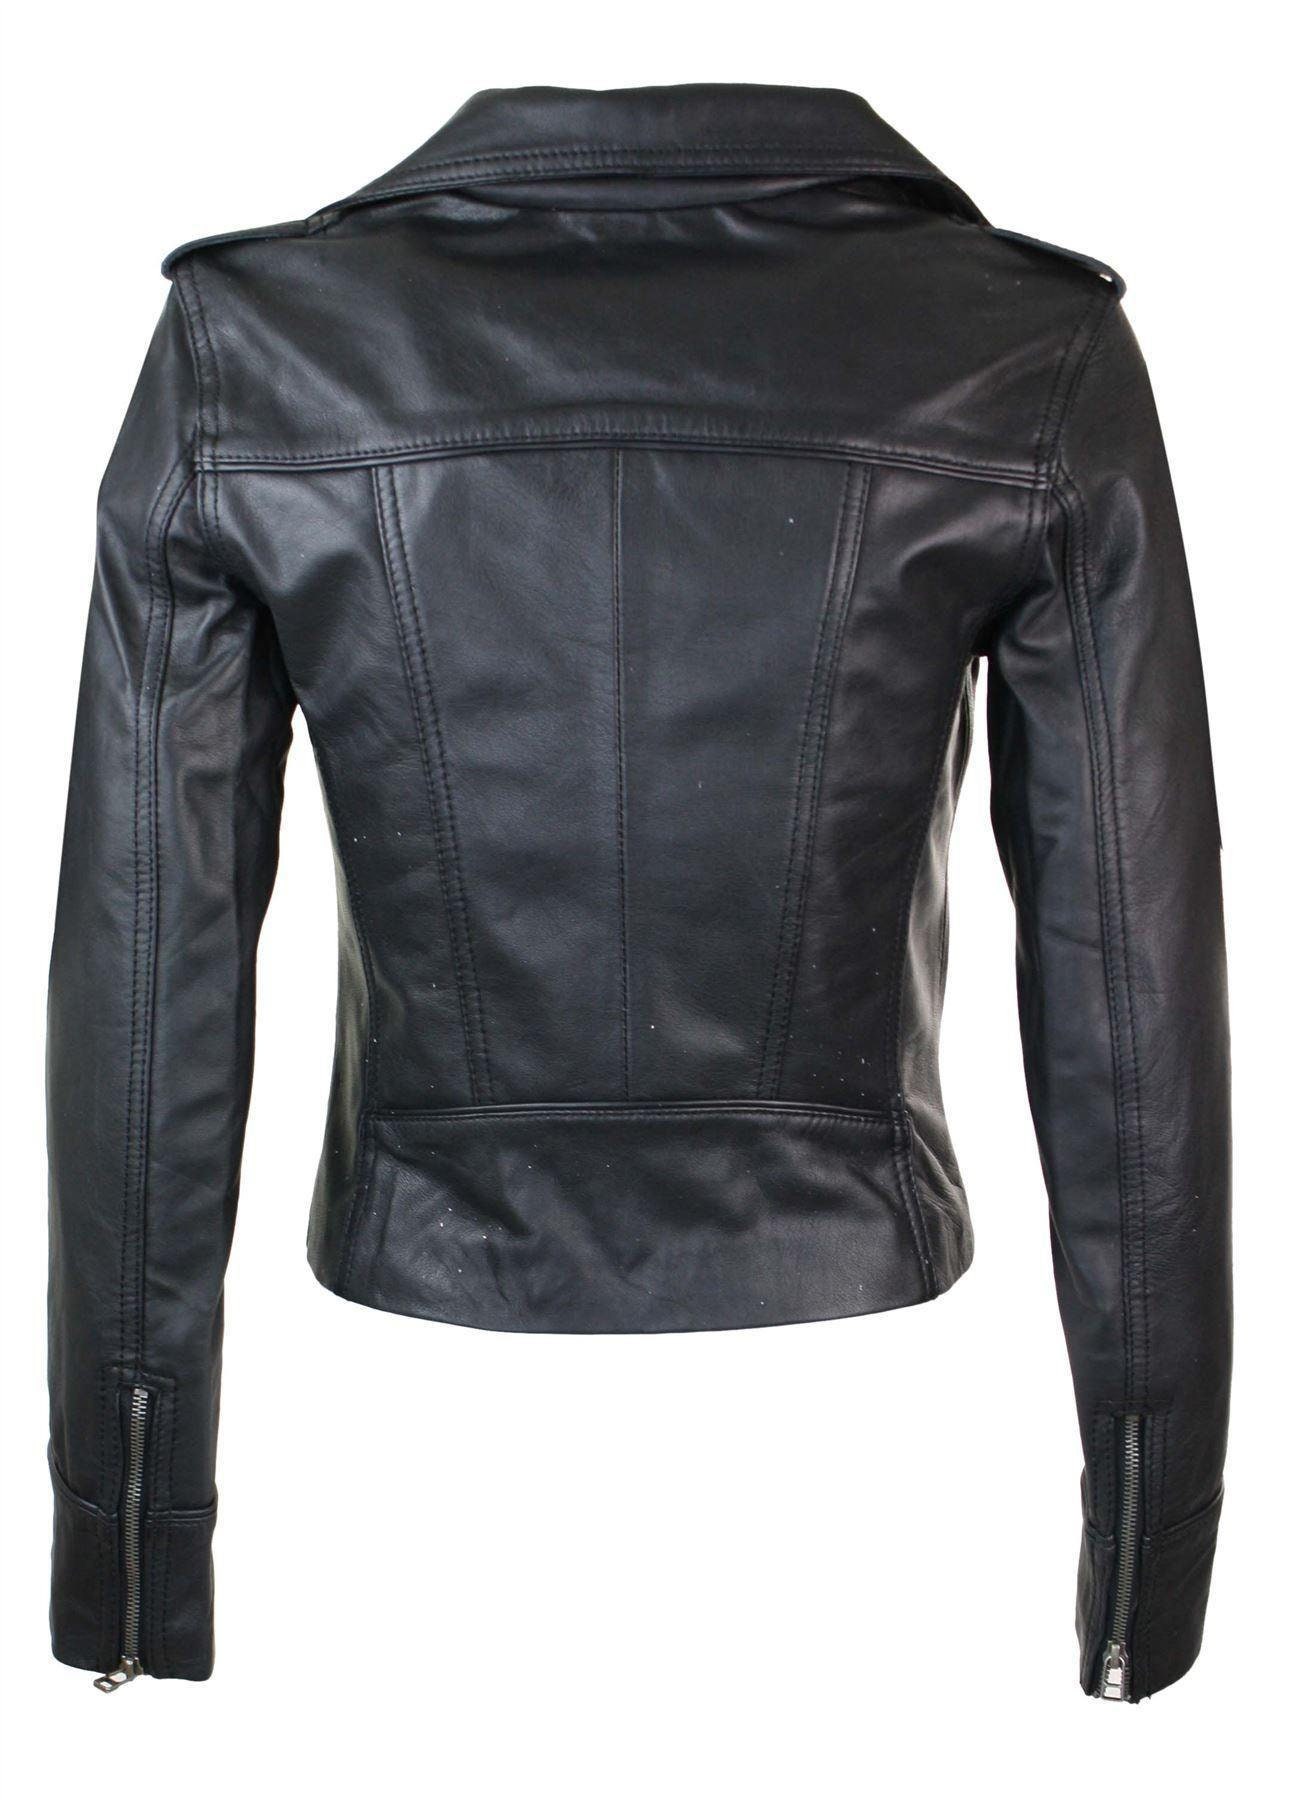 Ladies Real Leather Black or Yellow Biker Style Fashion Jacket - Etsy UK